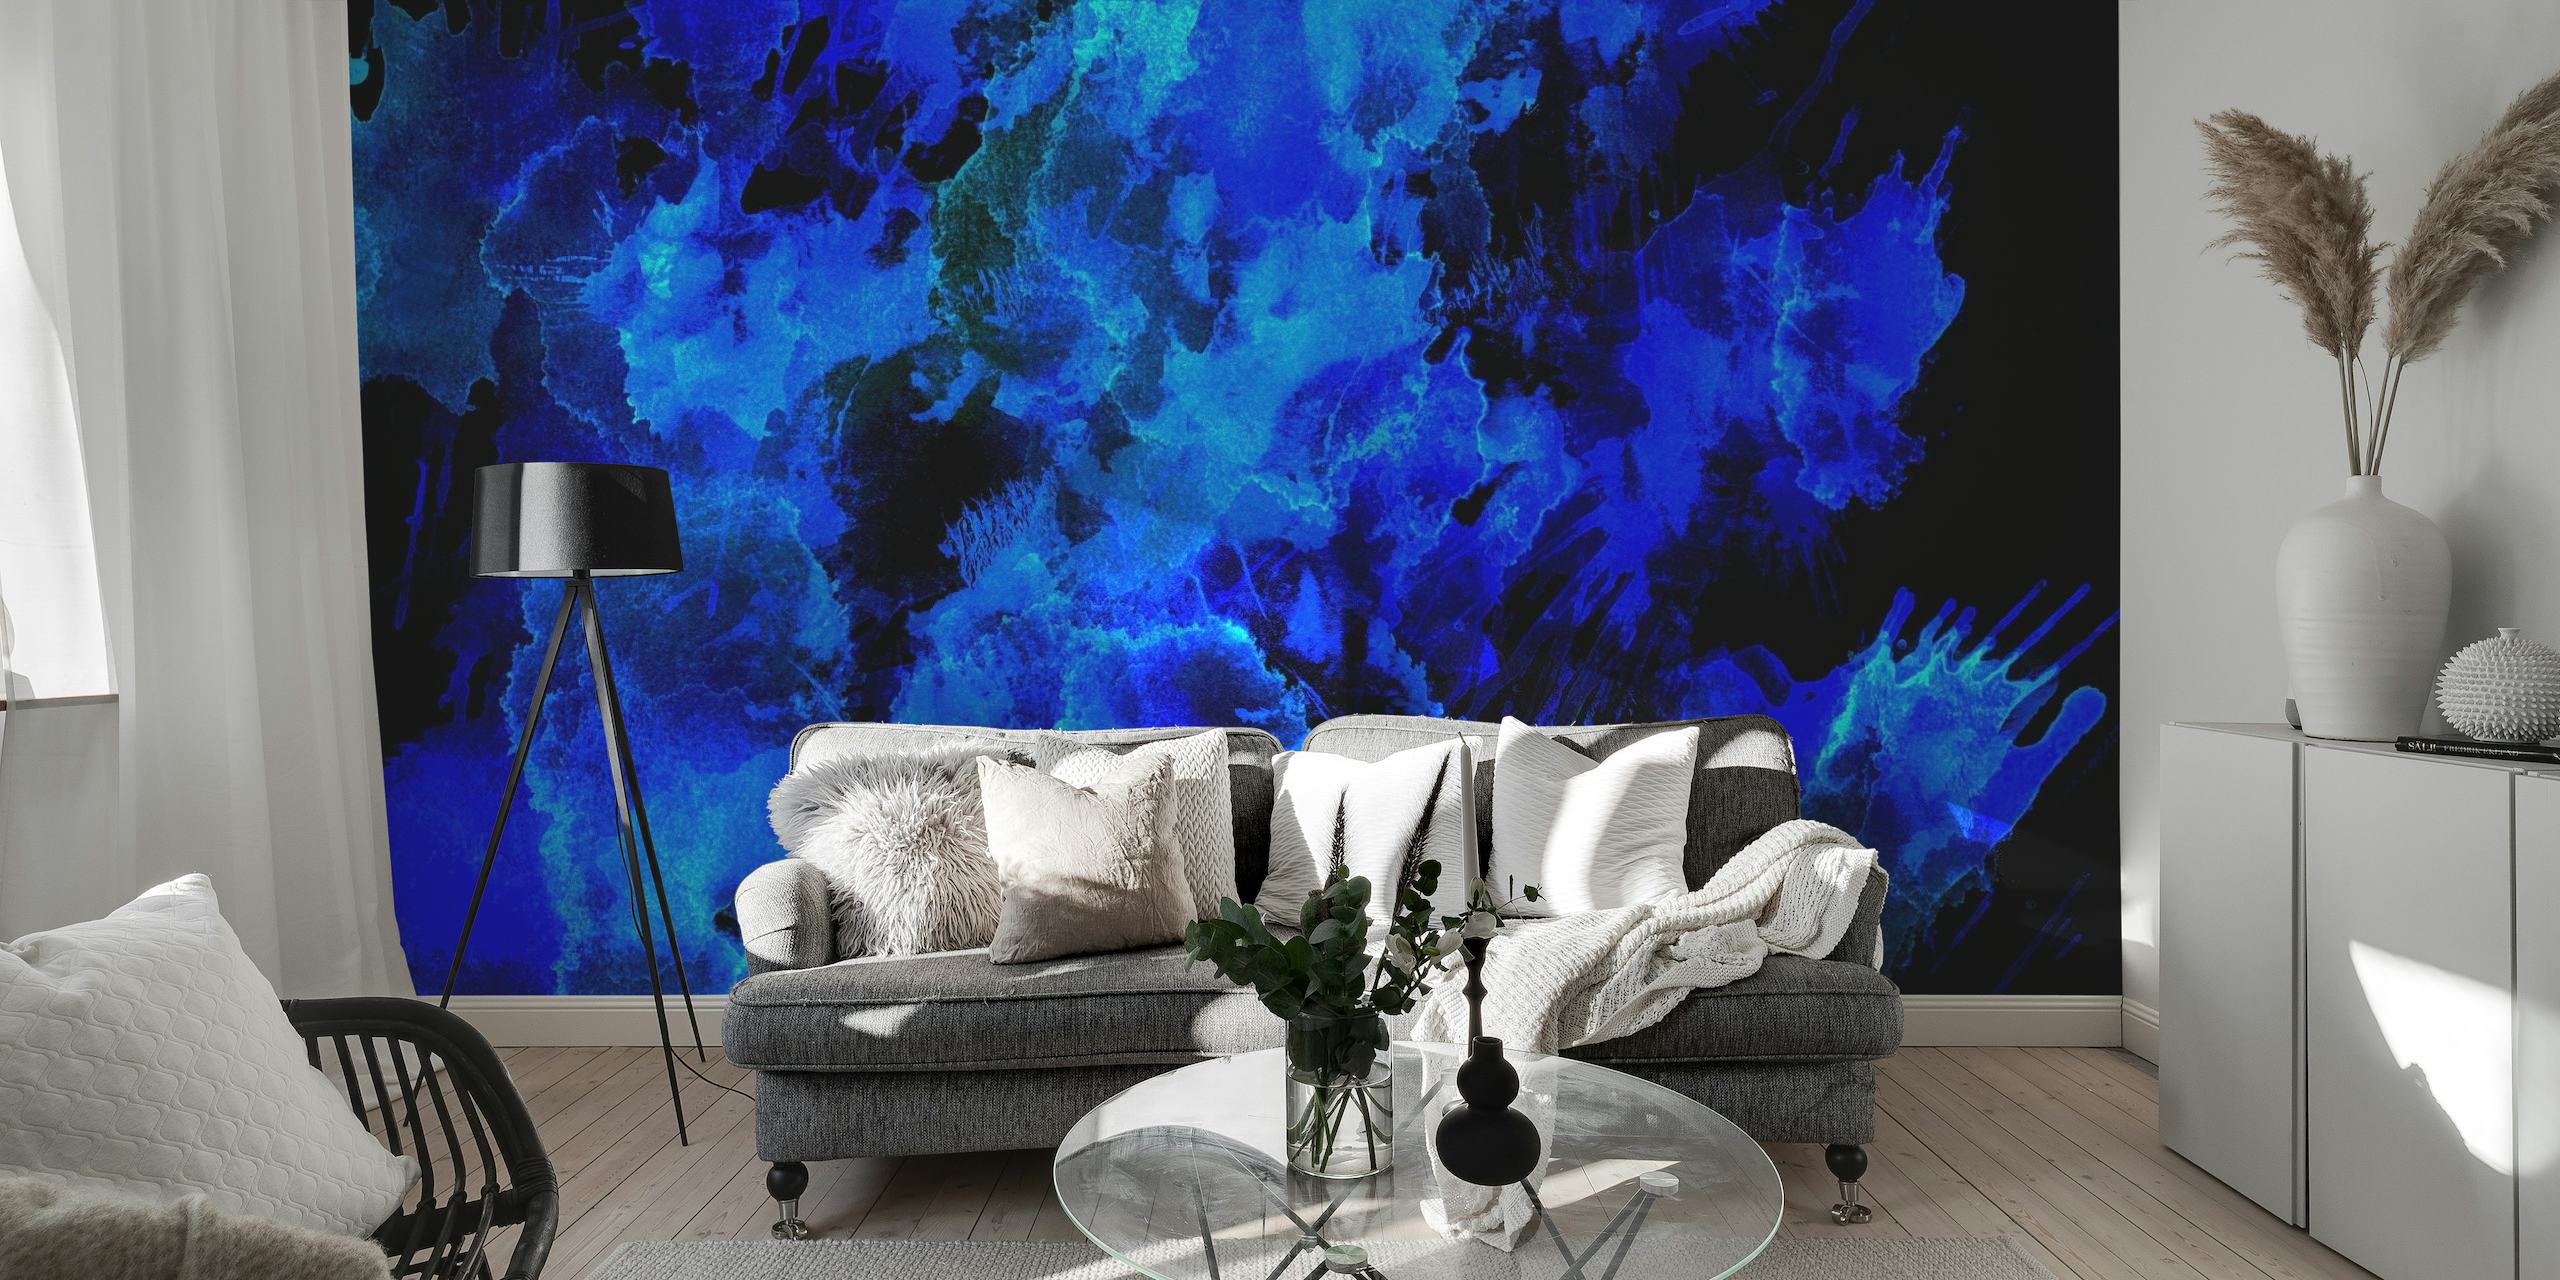 Muurschildering in abstracte blauwe tinten die de schoonheid van de nachtelijke hemel of de diepten van de oceaan oproept